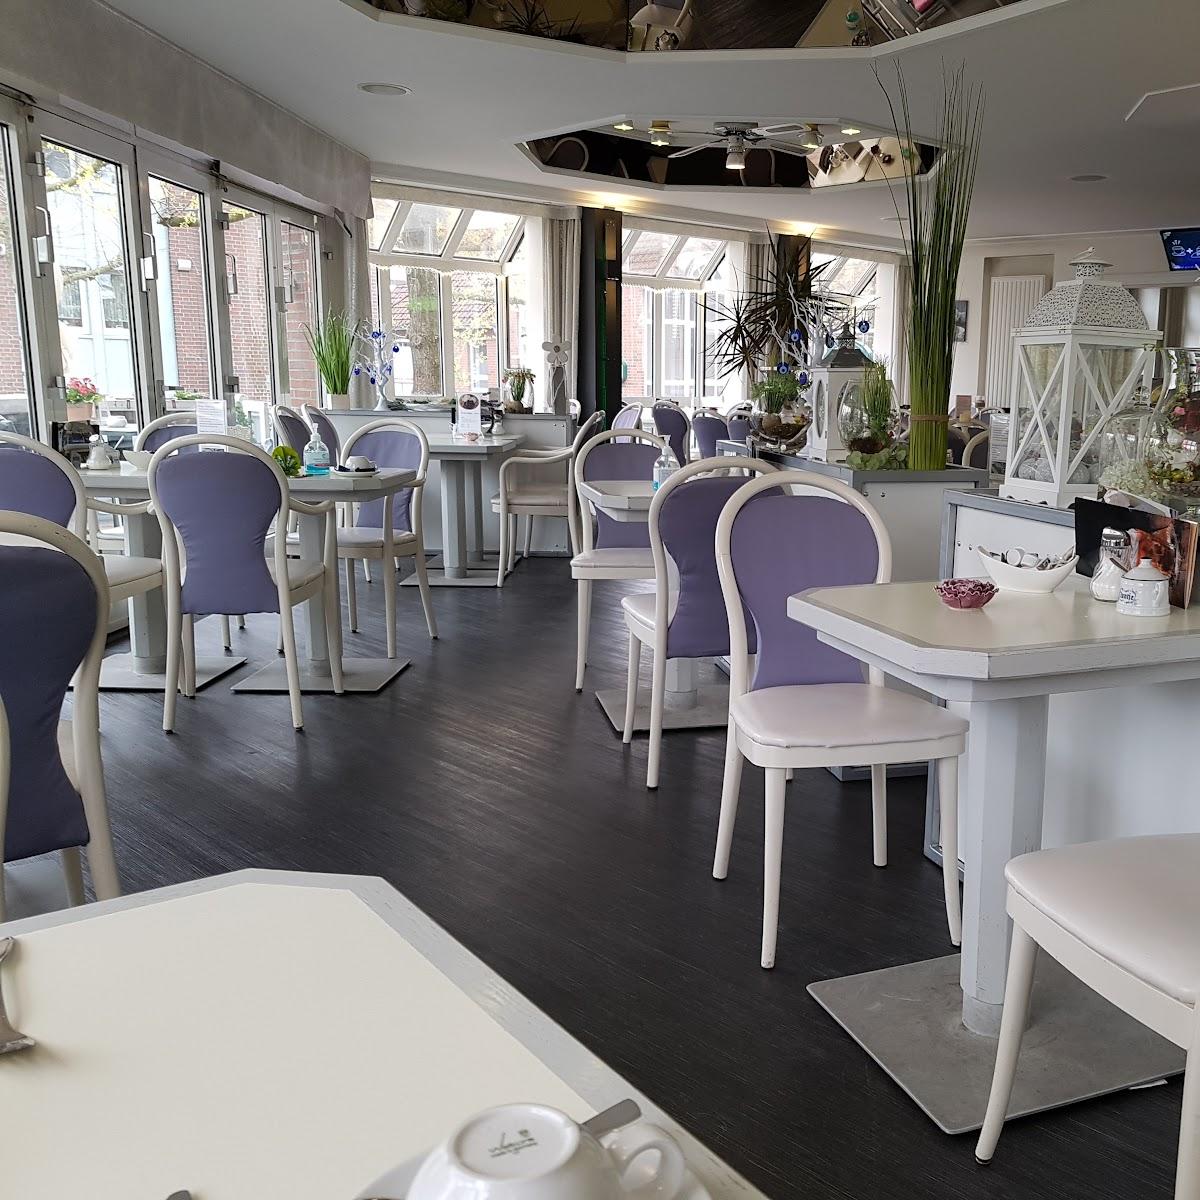 Restaurant "Arkaden Cafe" in Bad Zwischenahn